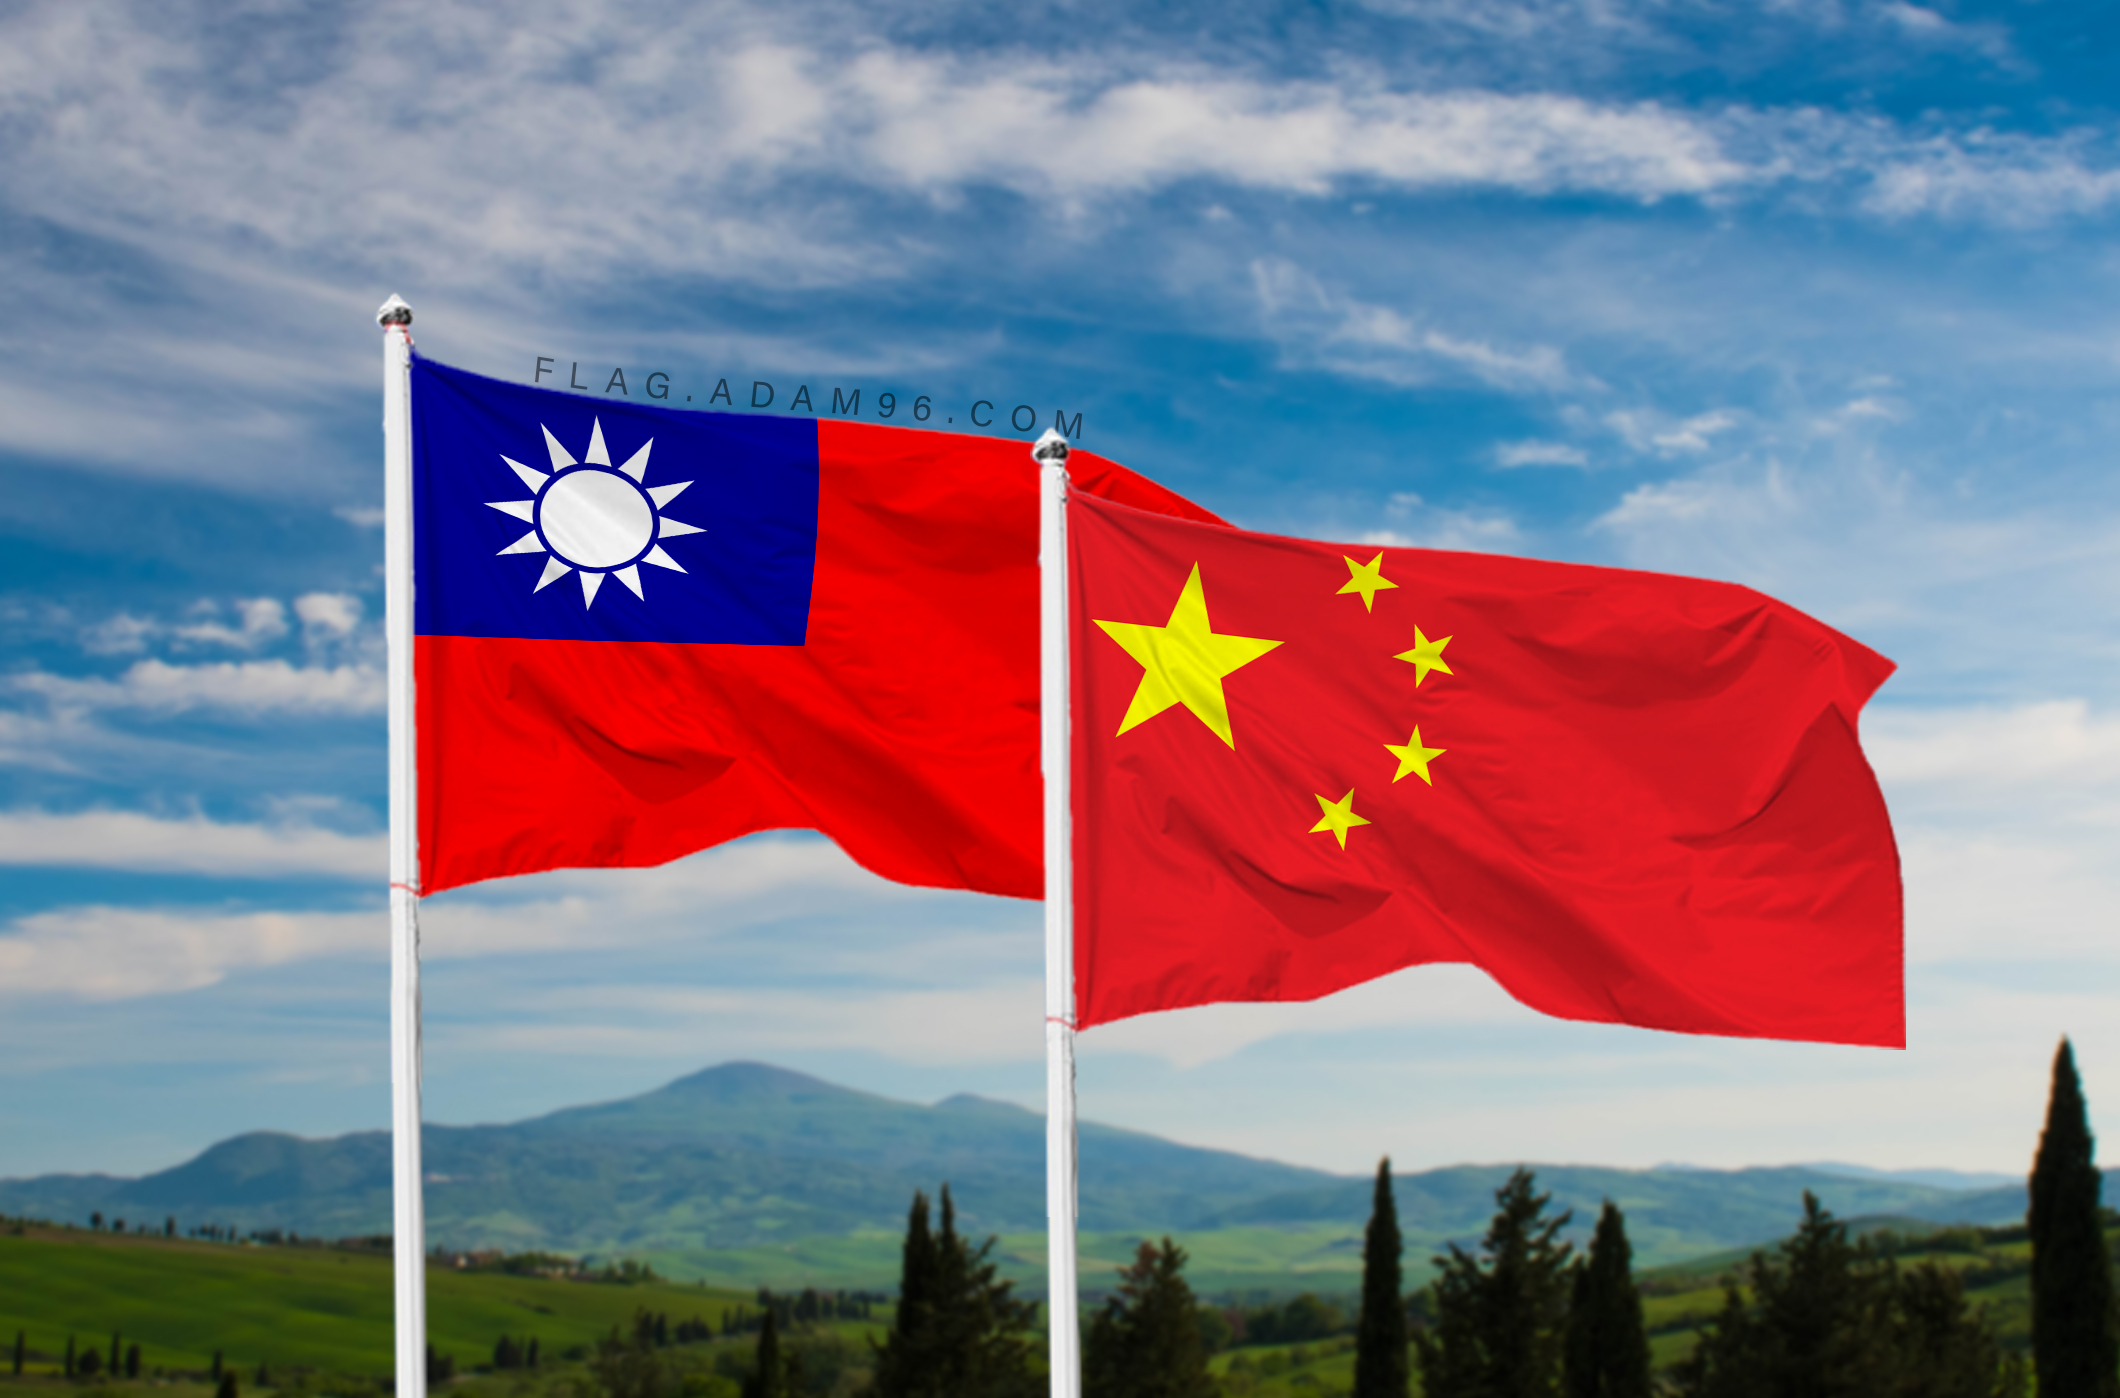 تحميل علم الصين وتايوان خلفية اعلام العالم بدقة عالية China and Taiwan